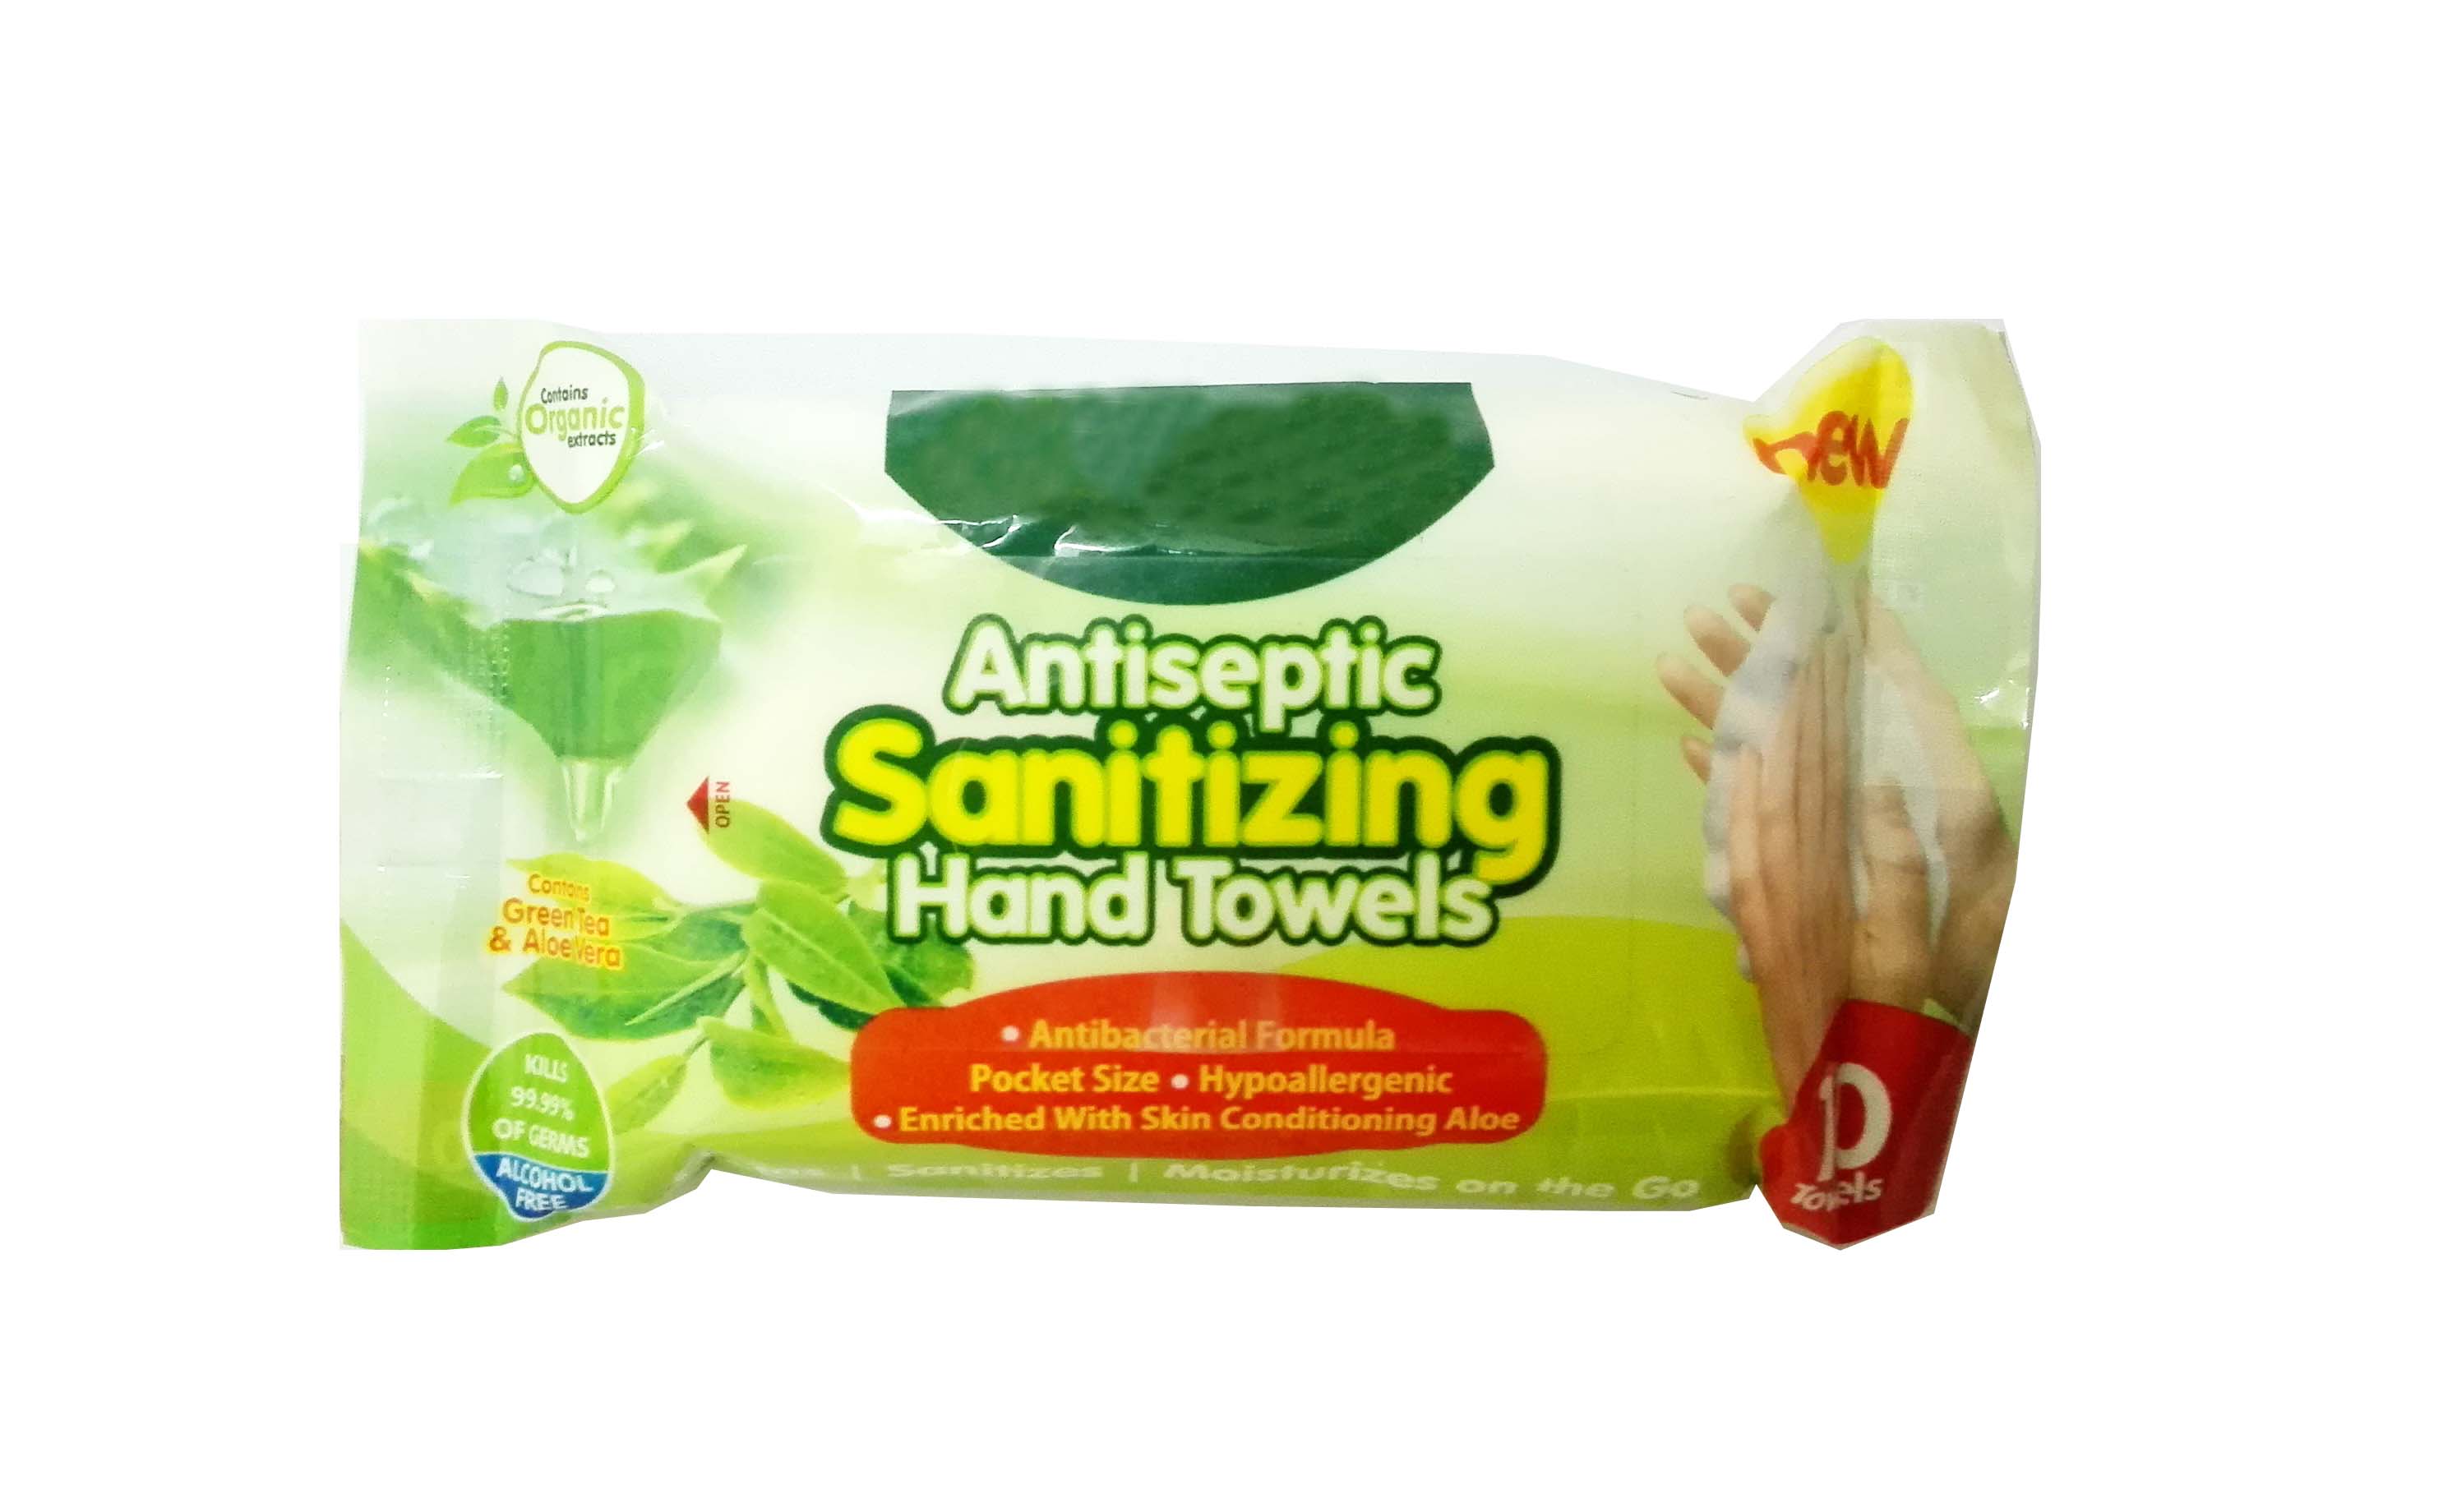 Antiseptic sanitizing hand towels